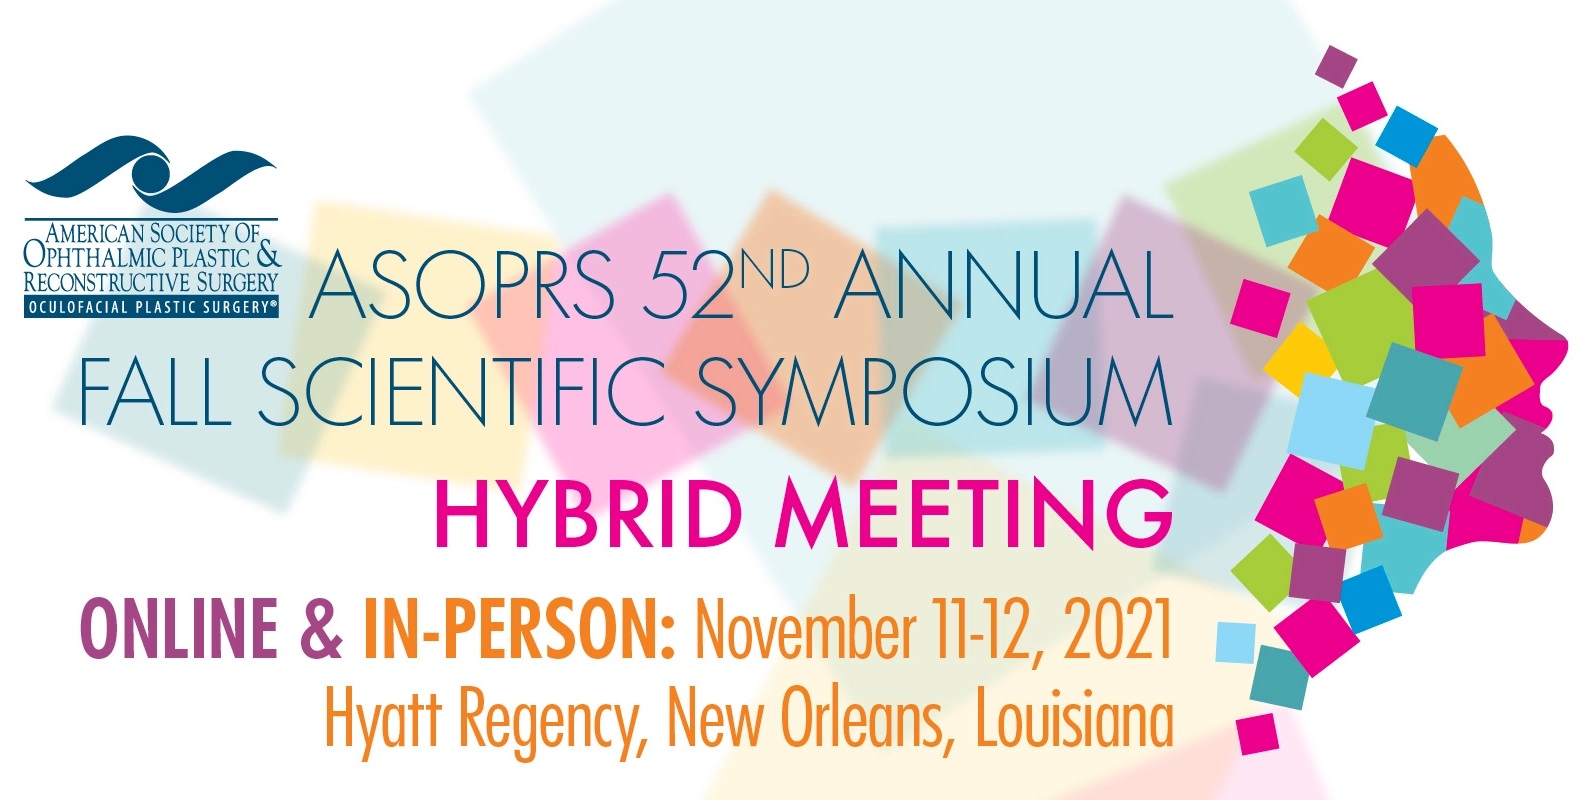 ASOPRS 2021 Fall Scientific Symposium 